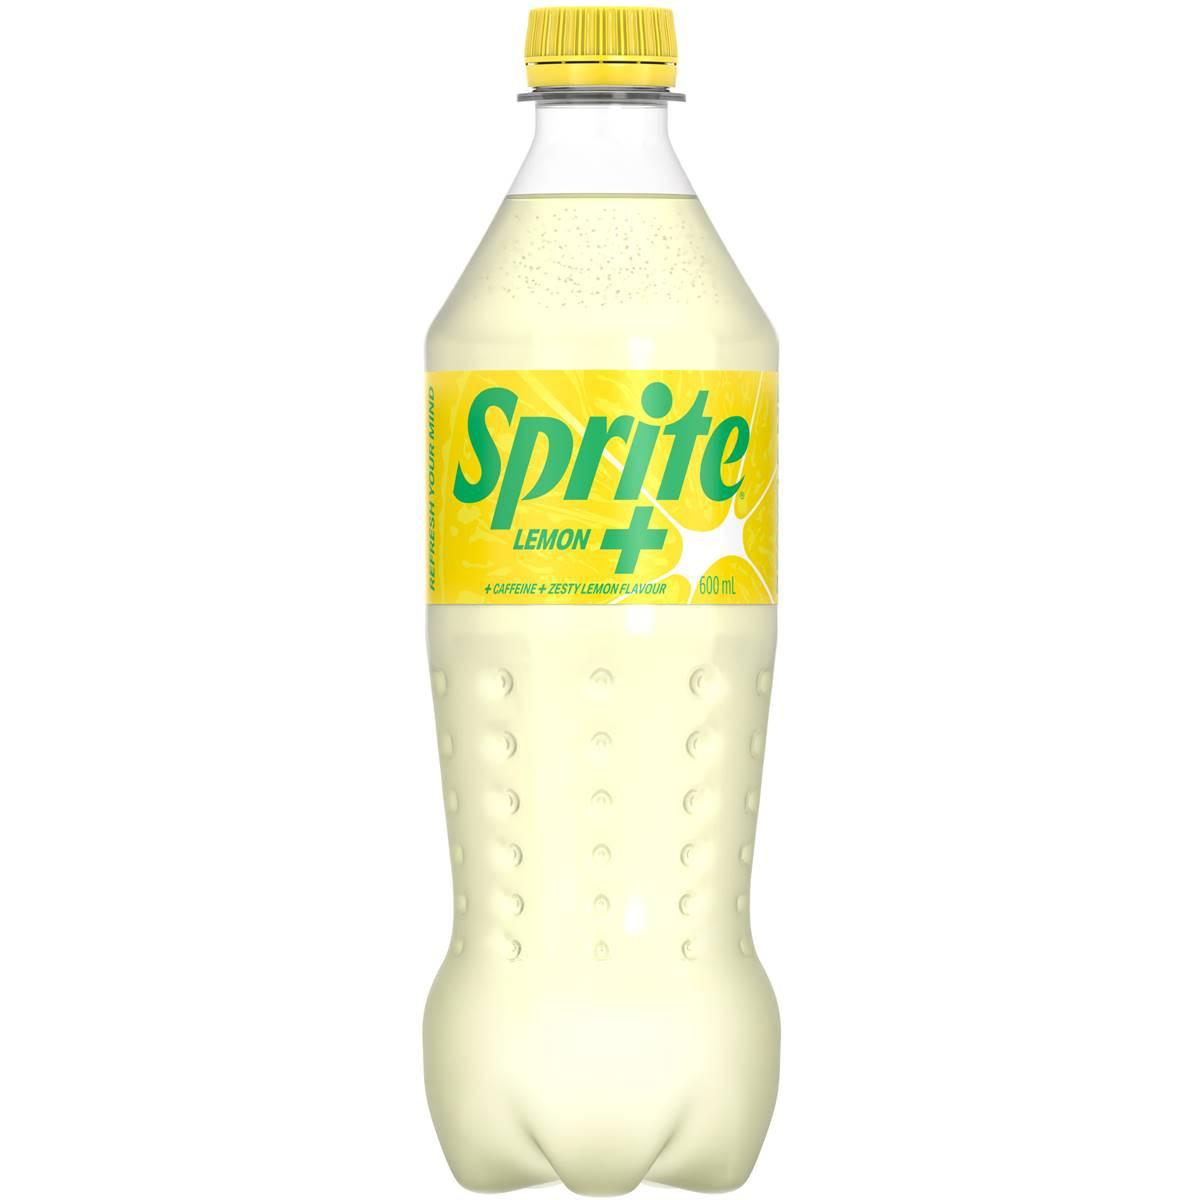 Sprite Lemon+ Soft Drink Bottle 600ml